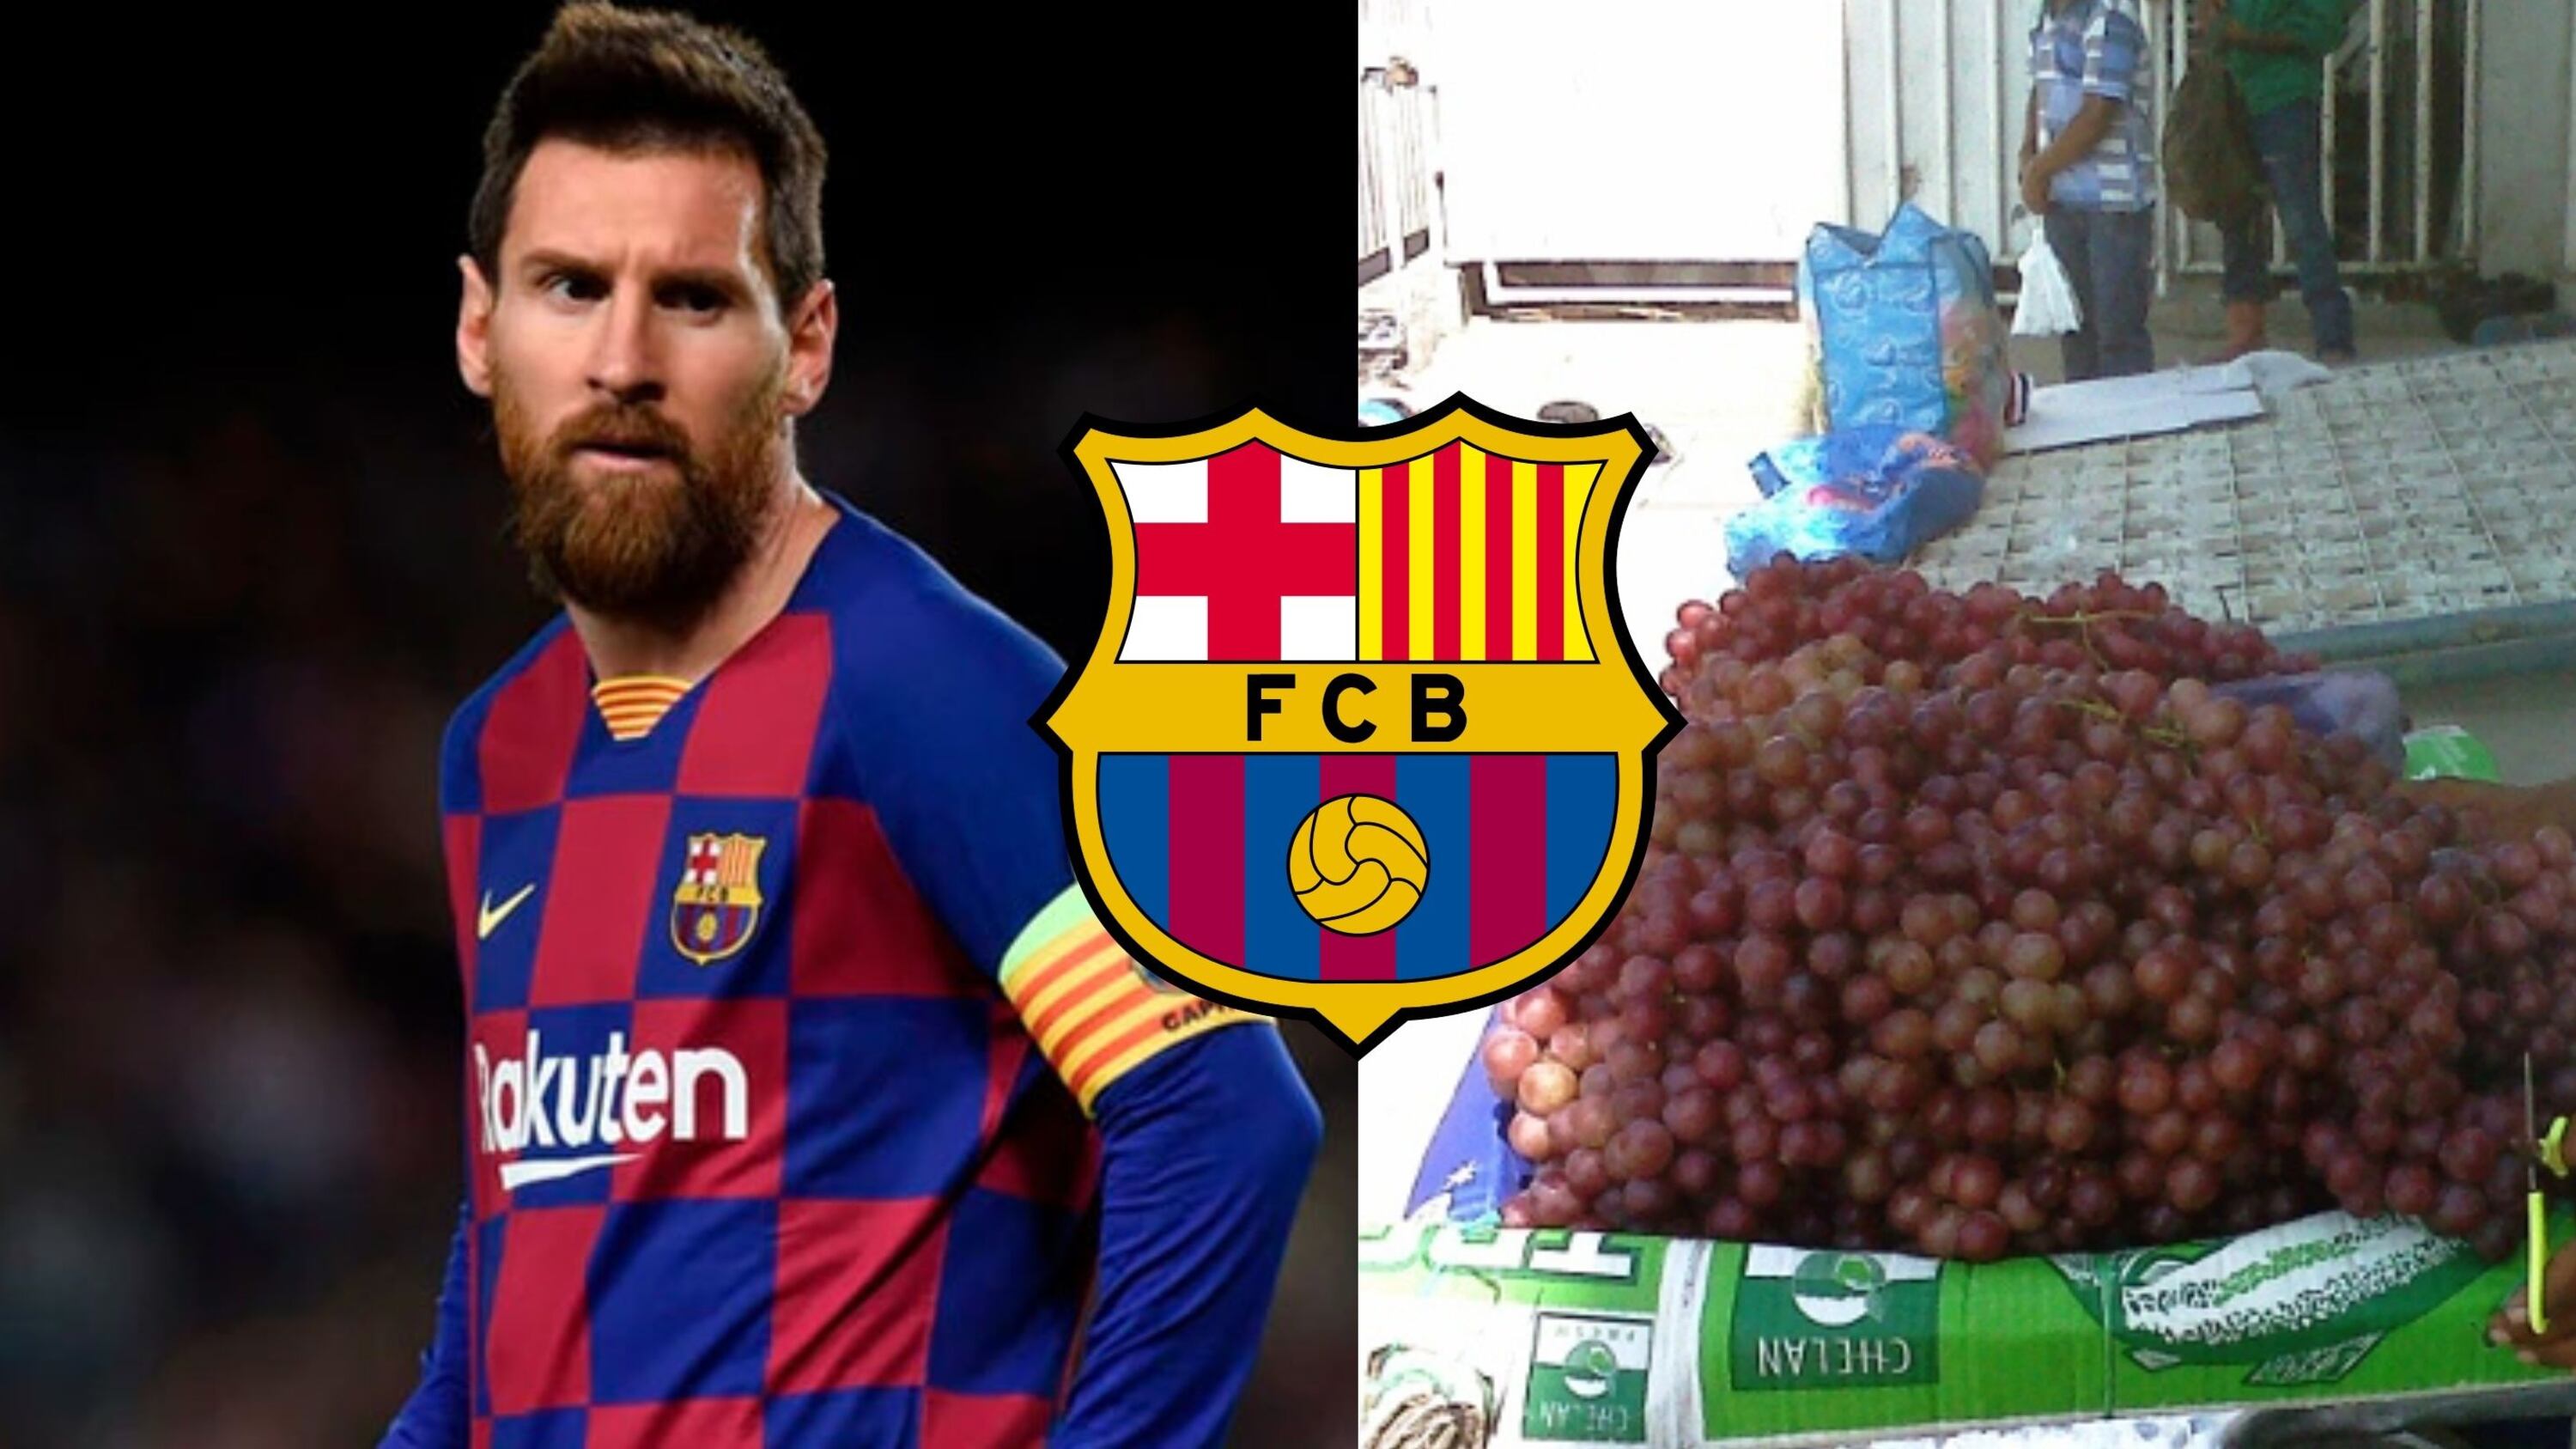 En Barcelona fue un fracaso y Messi lo odia porque le robó, hoy vende uvas